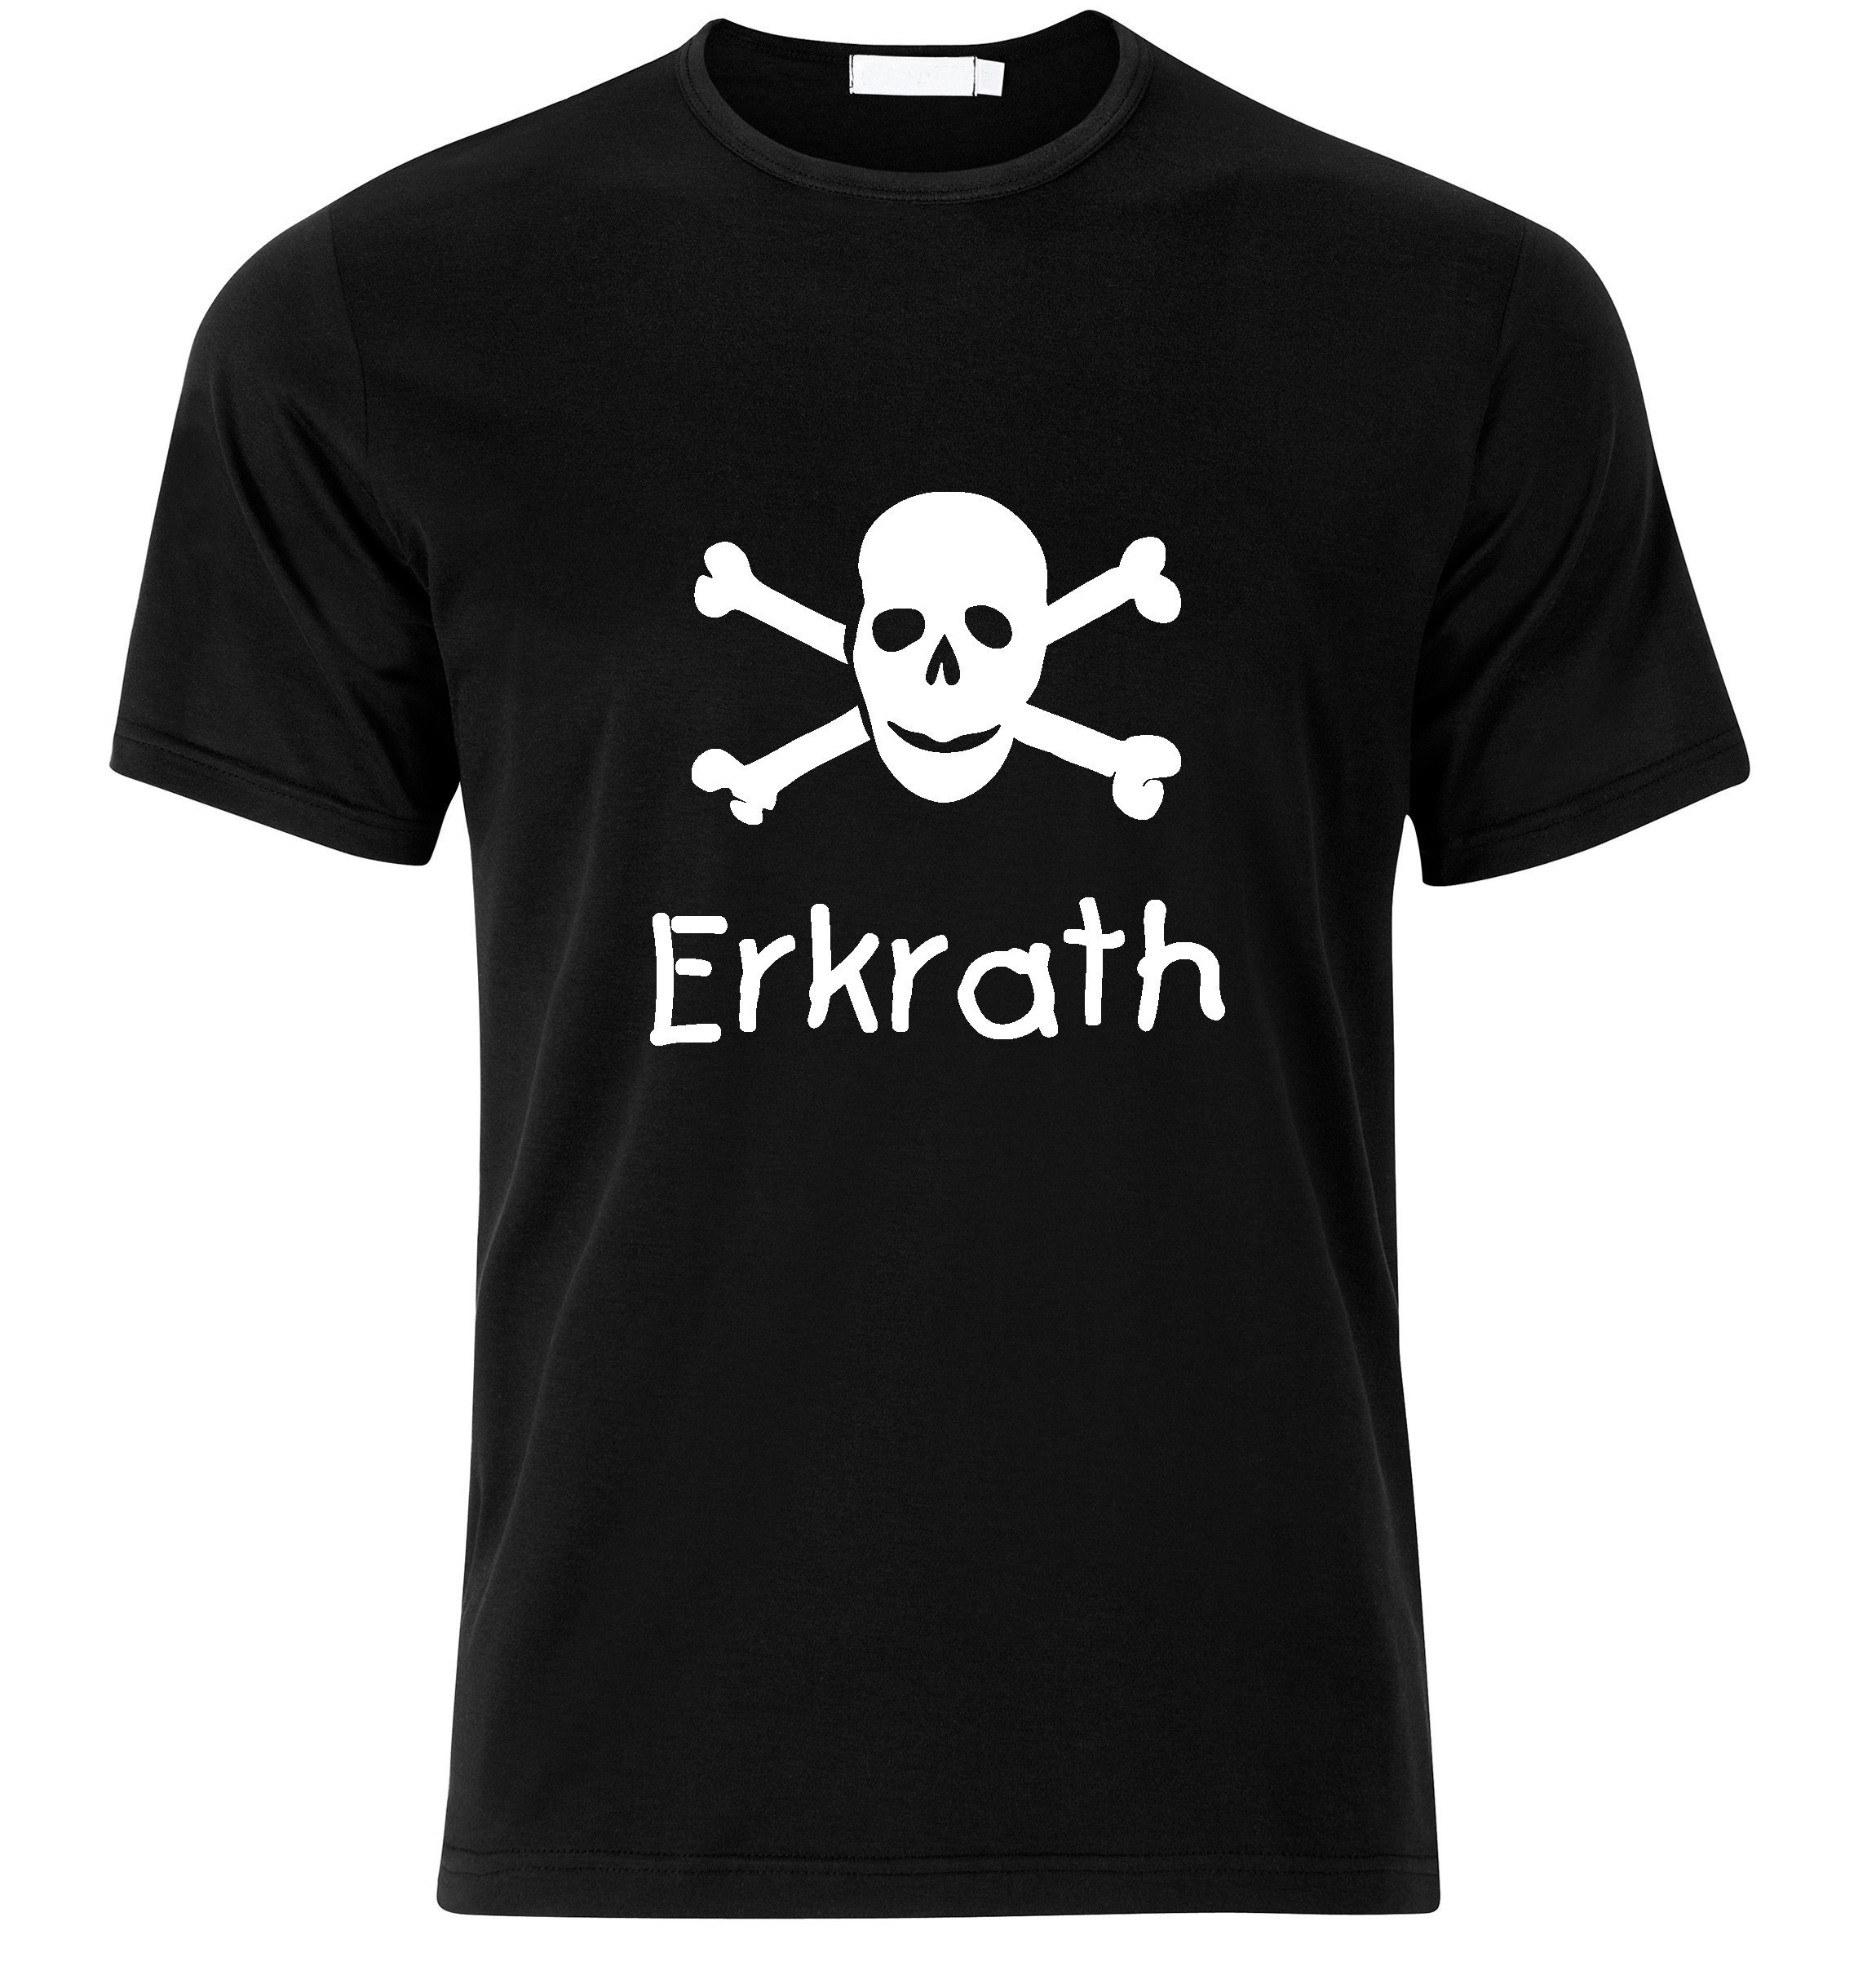 T-Shirt Erkrath Jolly Roger, Totenkopf